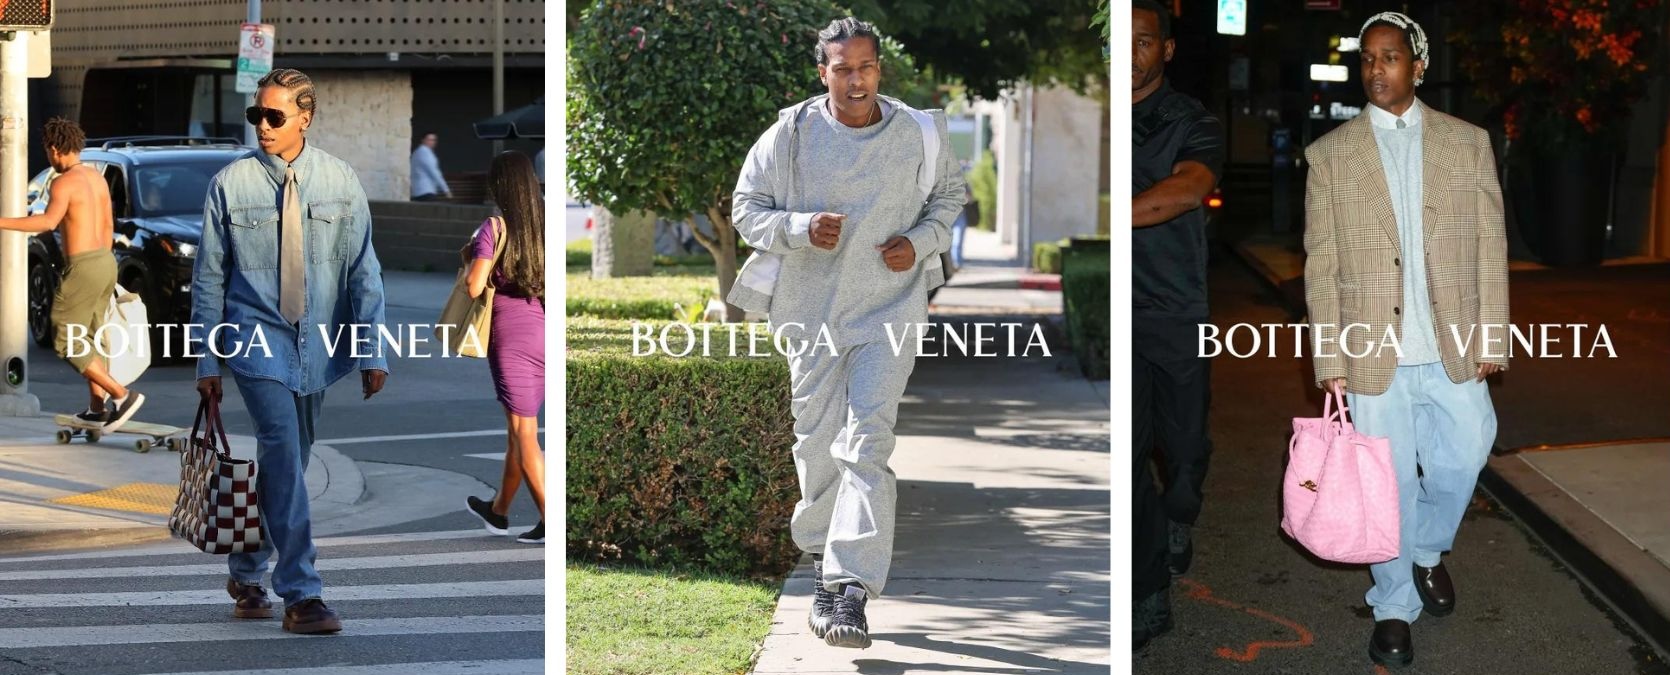 Les récentes photos de street style de A$AP Rocky servent en fait de campagne à la maison de luxe italienne Bottega Veneta